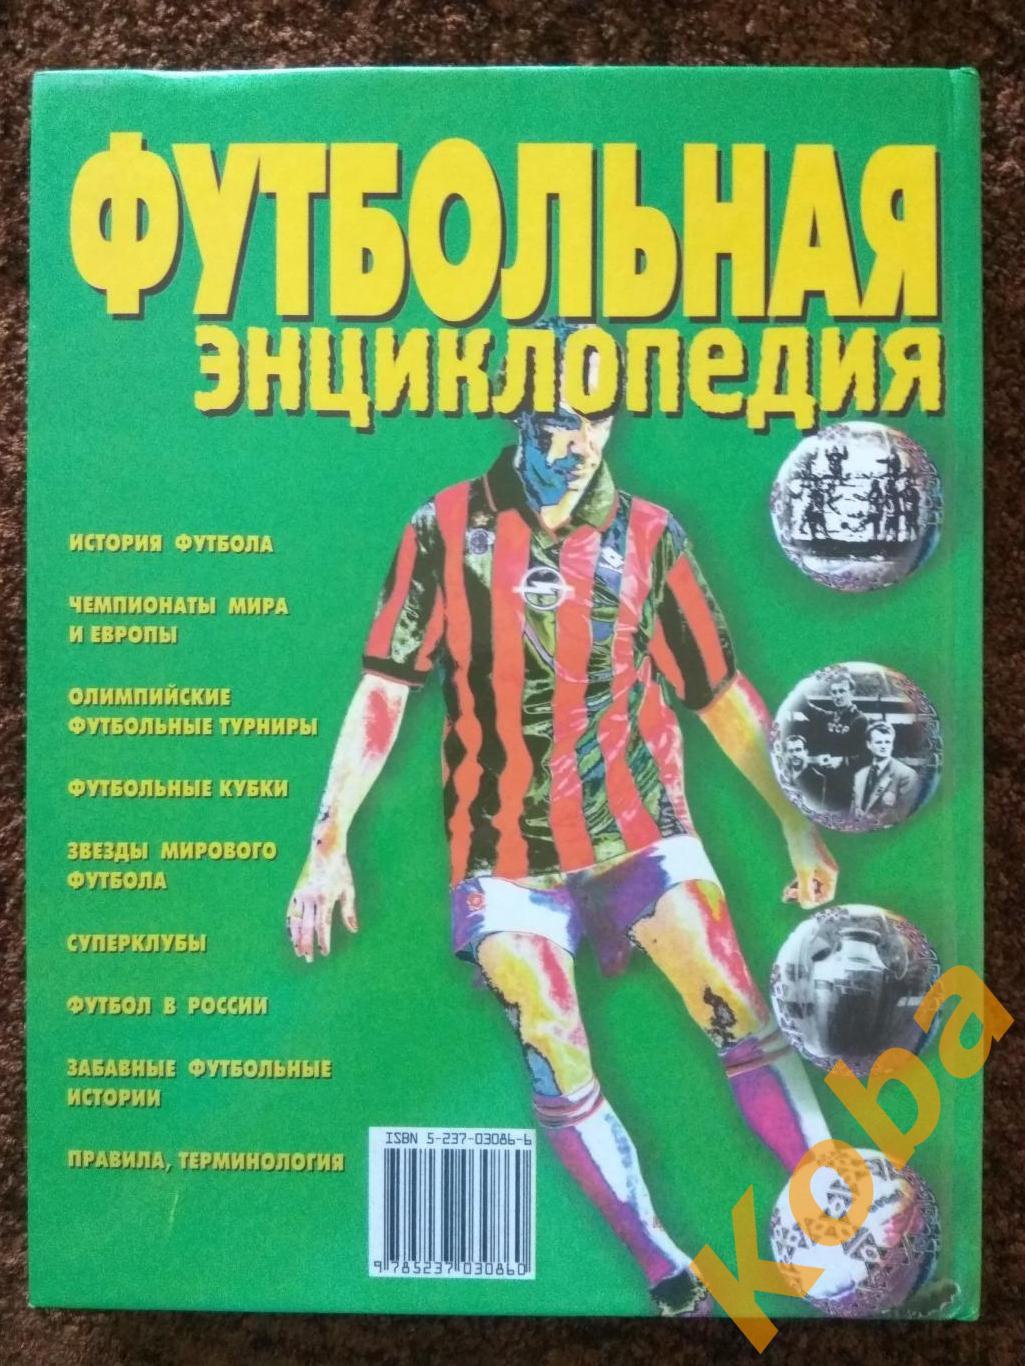 Футбольная энциклопедия А. Смирнов 2000 г. 2